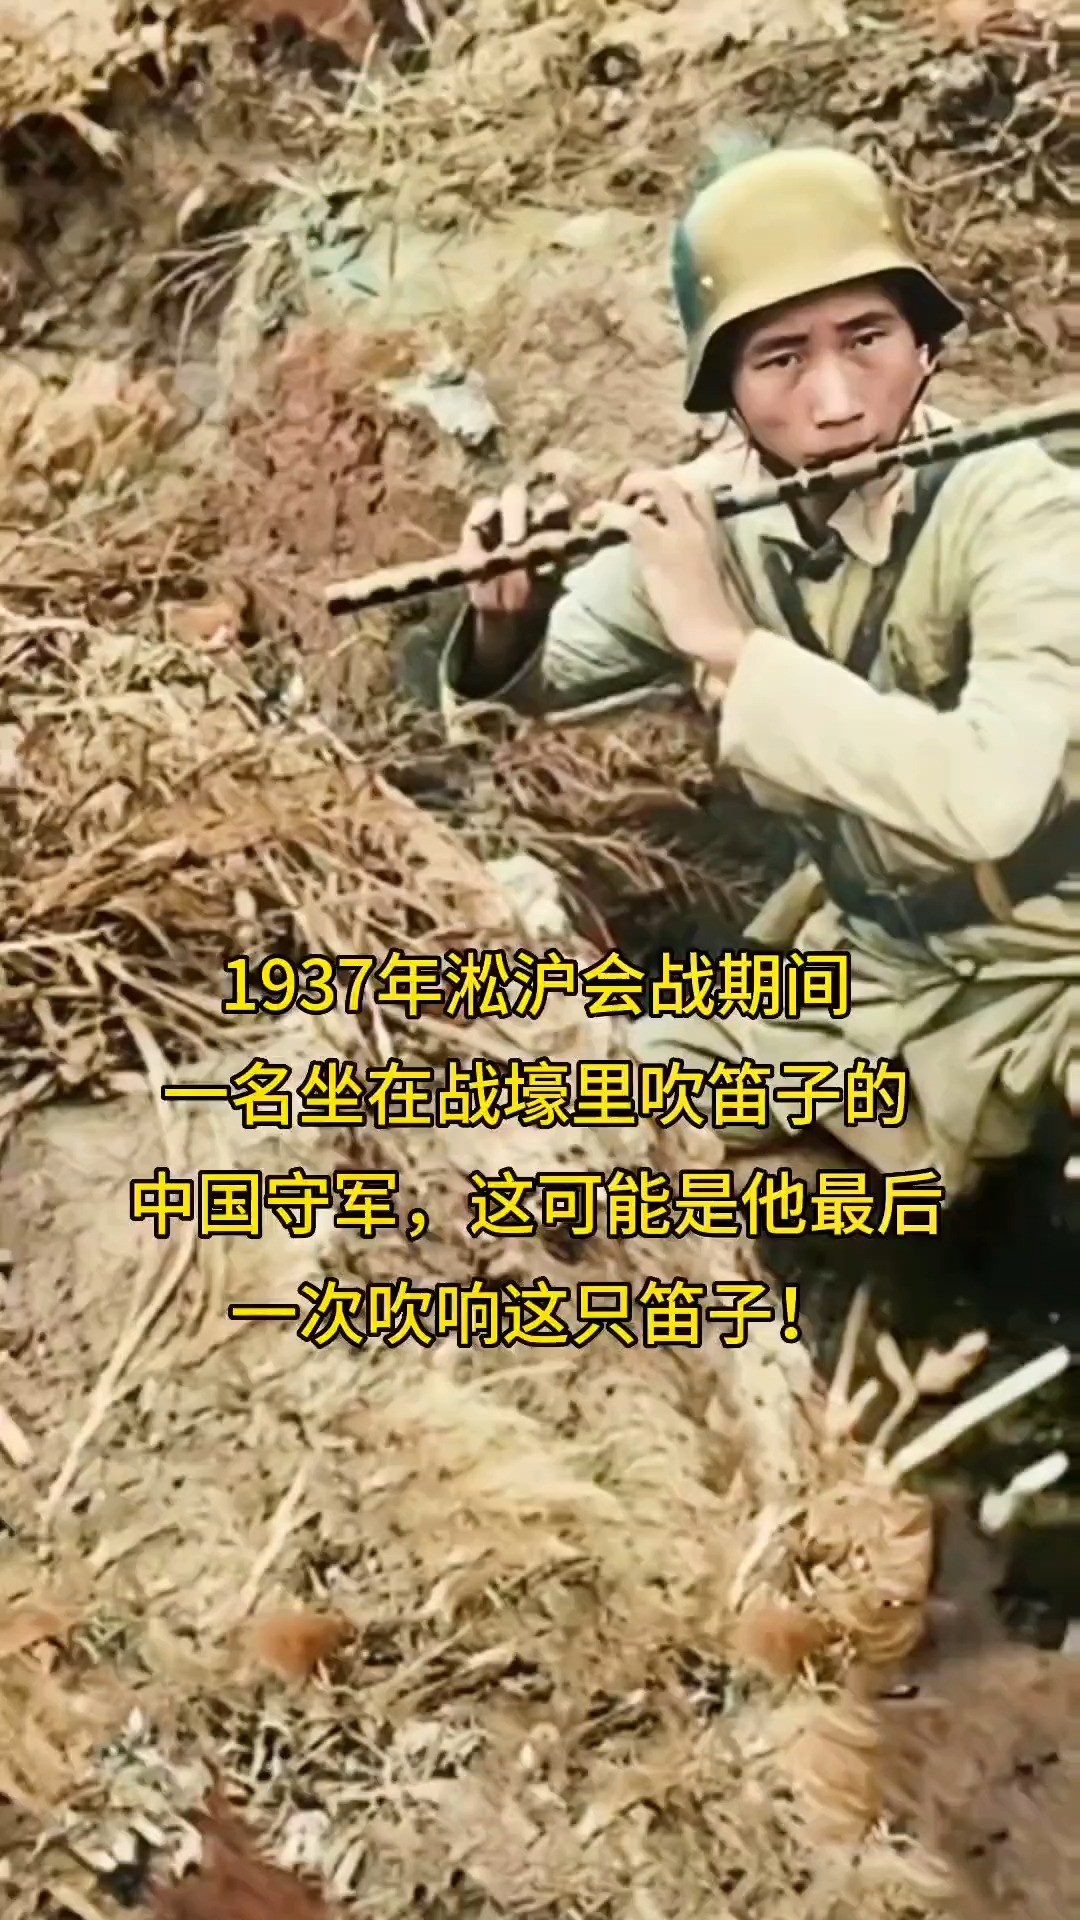 1937年凇沪会战期间，一名坐在战壕里吹着笛子的中国守军，这可能是他最后一次吹响这只笛子！向英雄致敬！#铭记历史勿忘国耻#千万不要忘了那惨痛的历史

